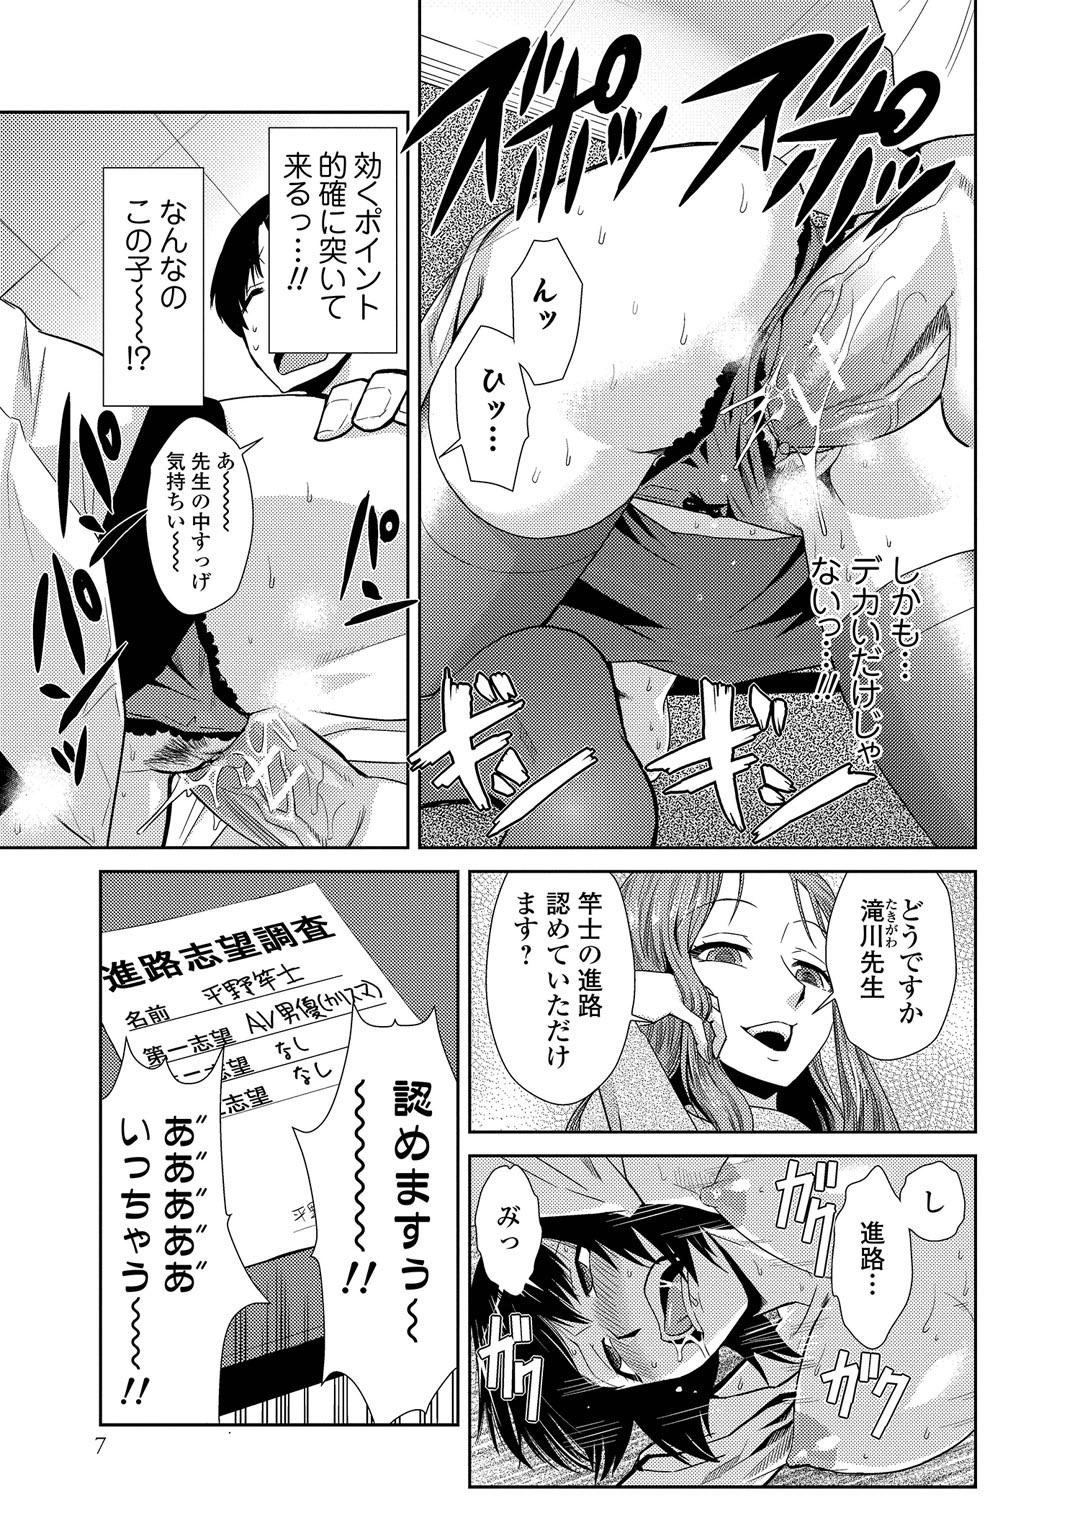 8teenxxx Do-M Kazoku Keikaku 18 Porn - Page 11